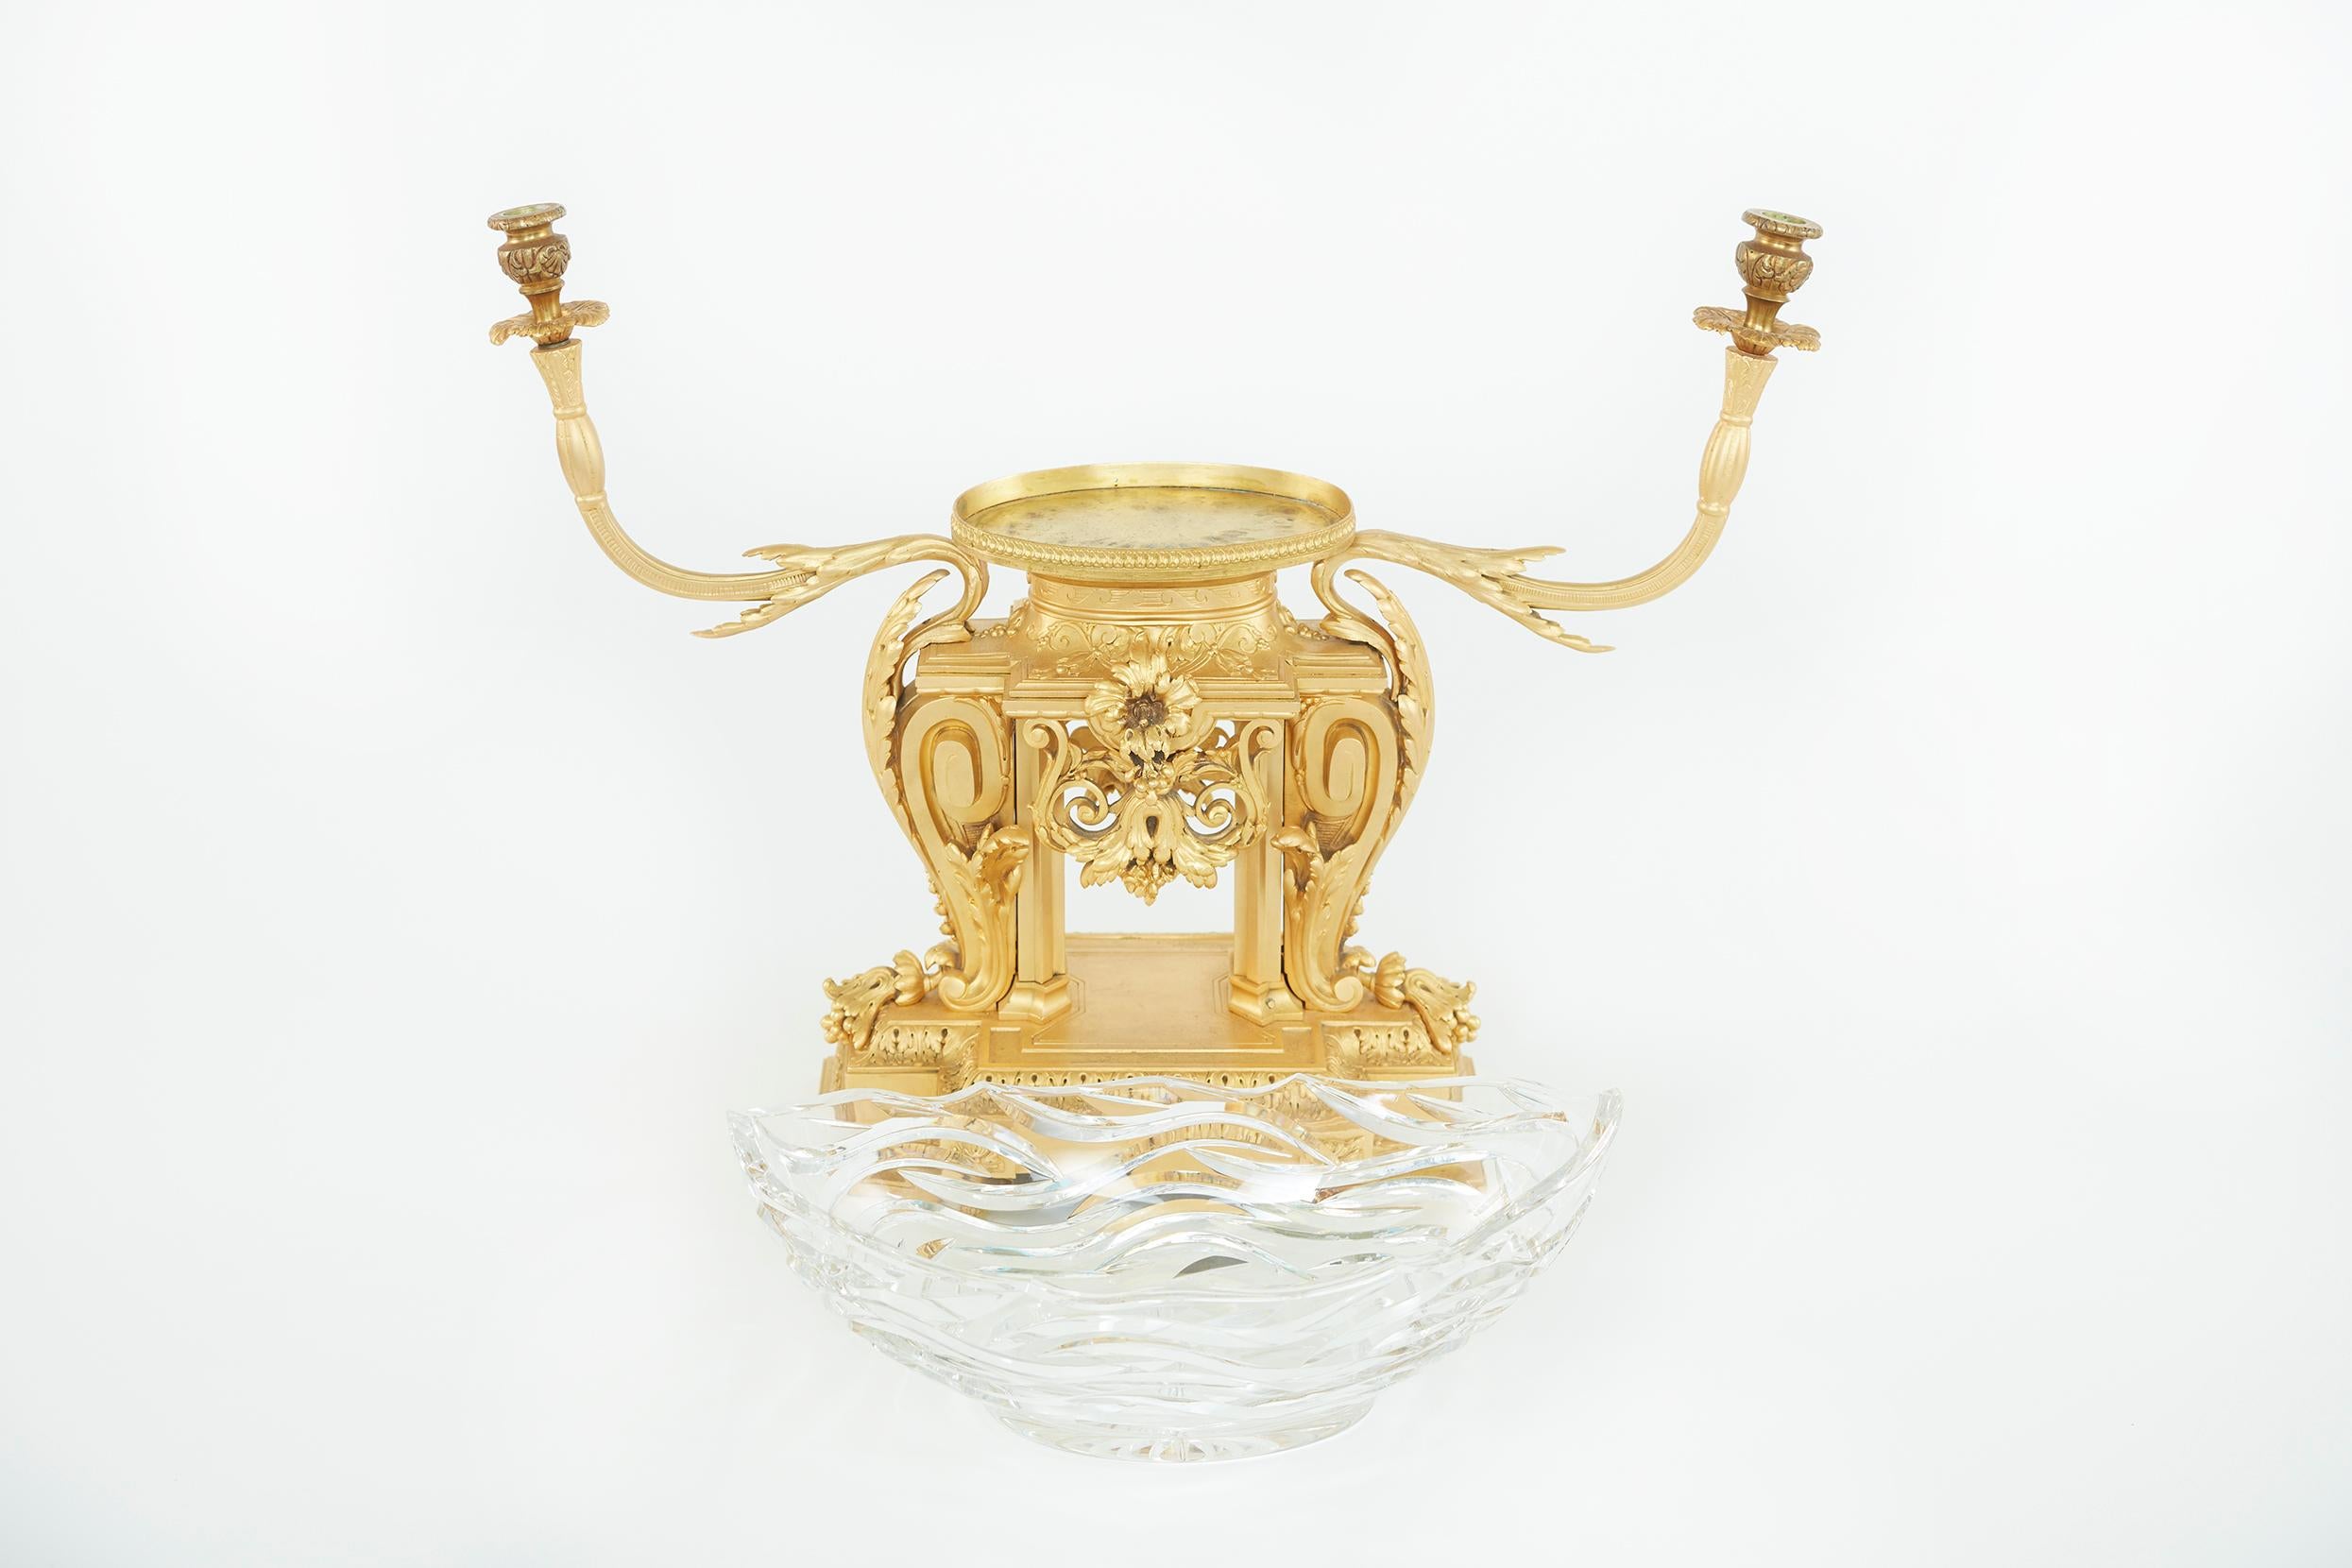 19. Jahrhundert vergoldete Bronze montiert mit geschliffenem Glas Halter dekorativen Tafelaufsatz mit externen Design-Details. In der Mitte befindet sich eine Schale in Form einer Navette, flankiert von verschlungenen Zweigen auf einem mit Laub